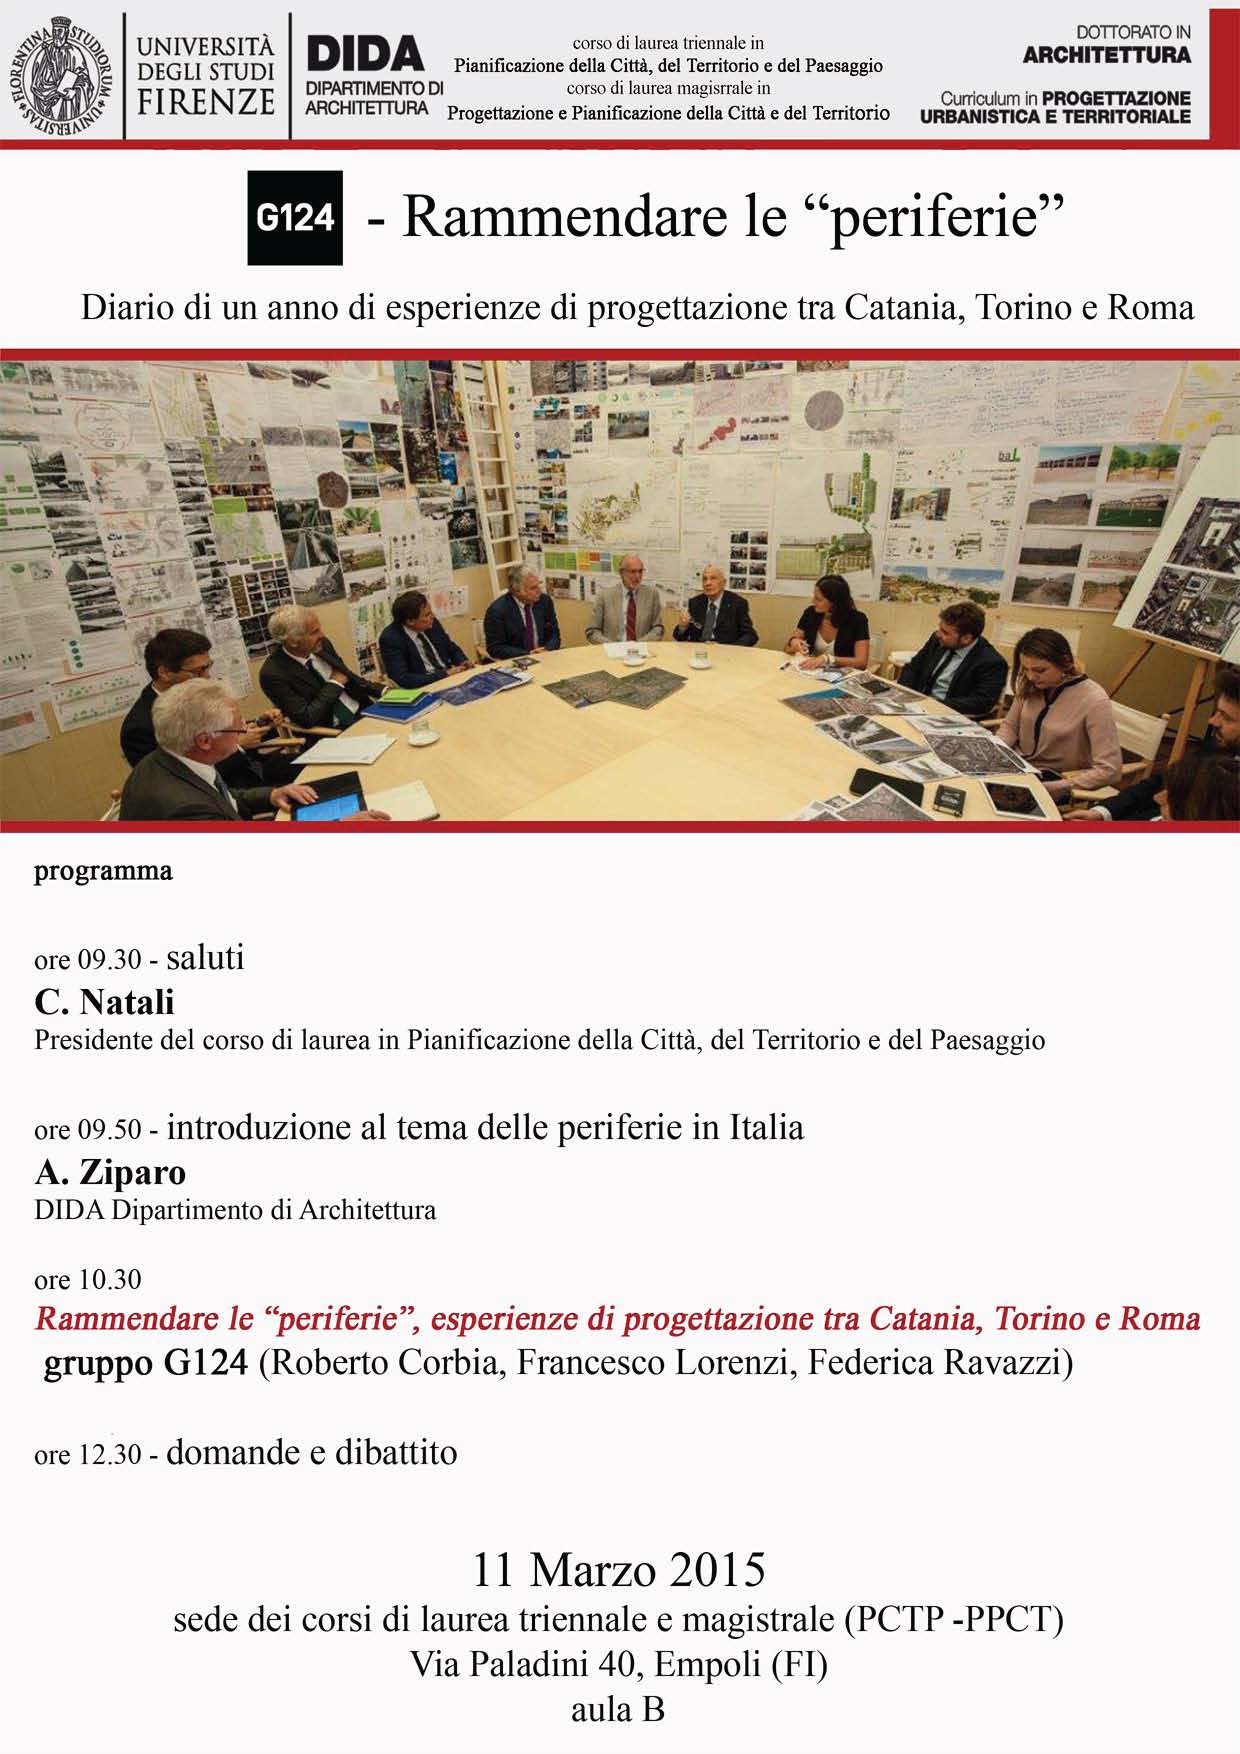 Rammendare le “periferie”. Diario di un anno di esperienze di progettazione tra Catania Torino e Roma